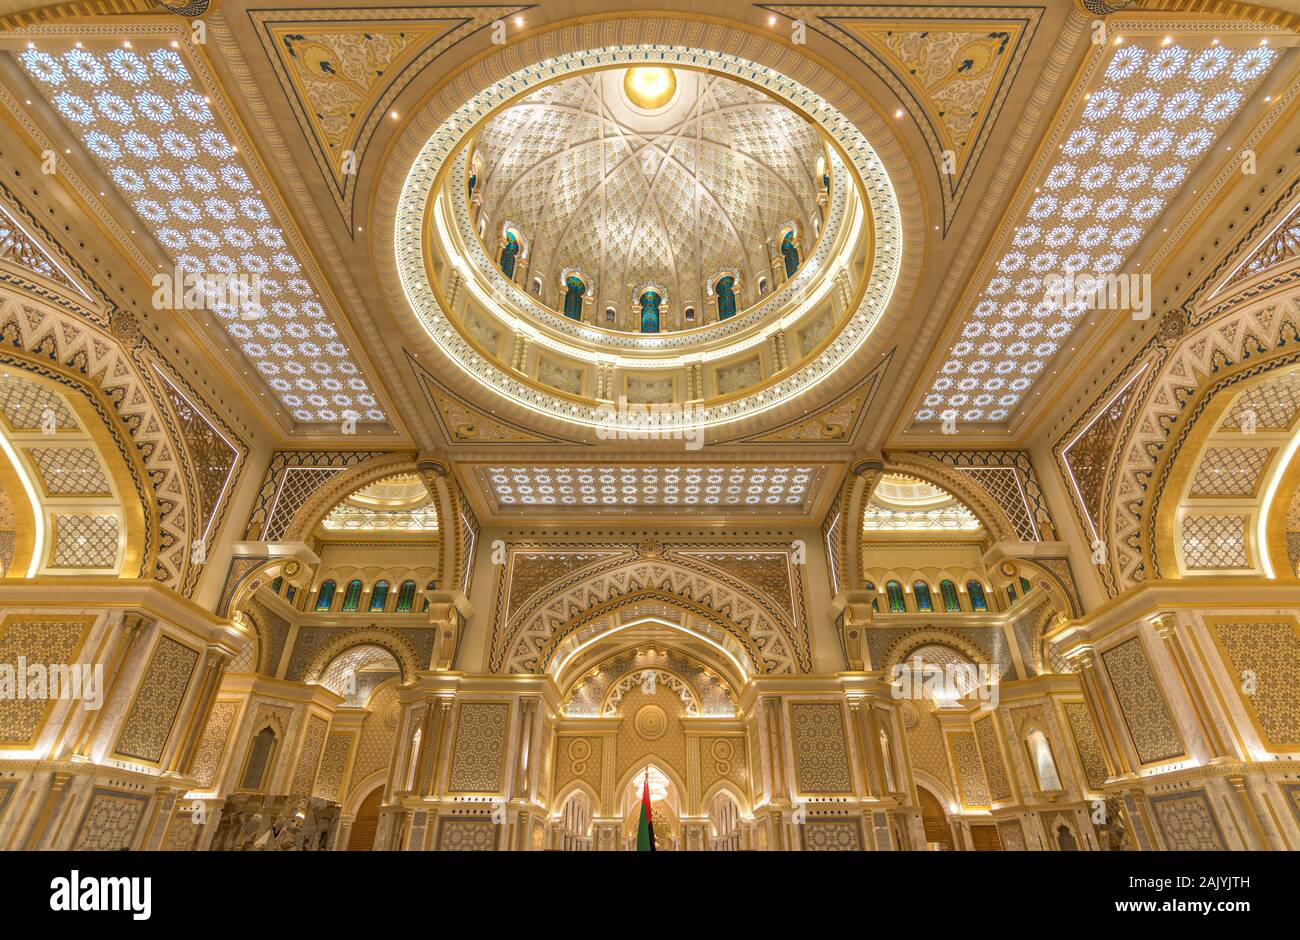 Abu Dhabi, Vereinigte Arabische Emirate: Die üppigen Dekorationen der Aula der Präsidentenpalast (Qasr Al Watan), der Palast der Nation, Anbauteile innen Stockfoto